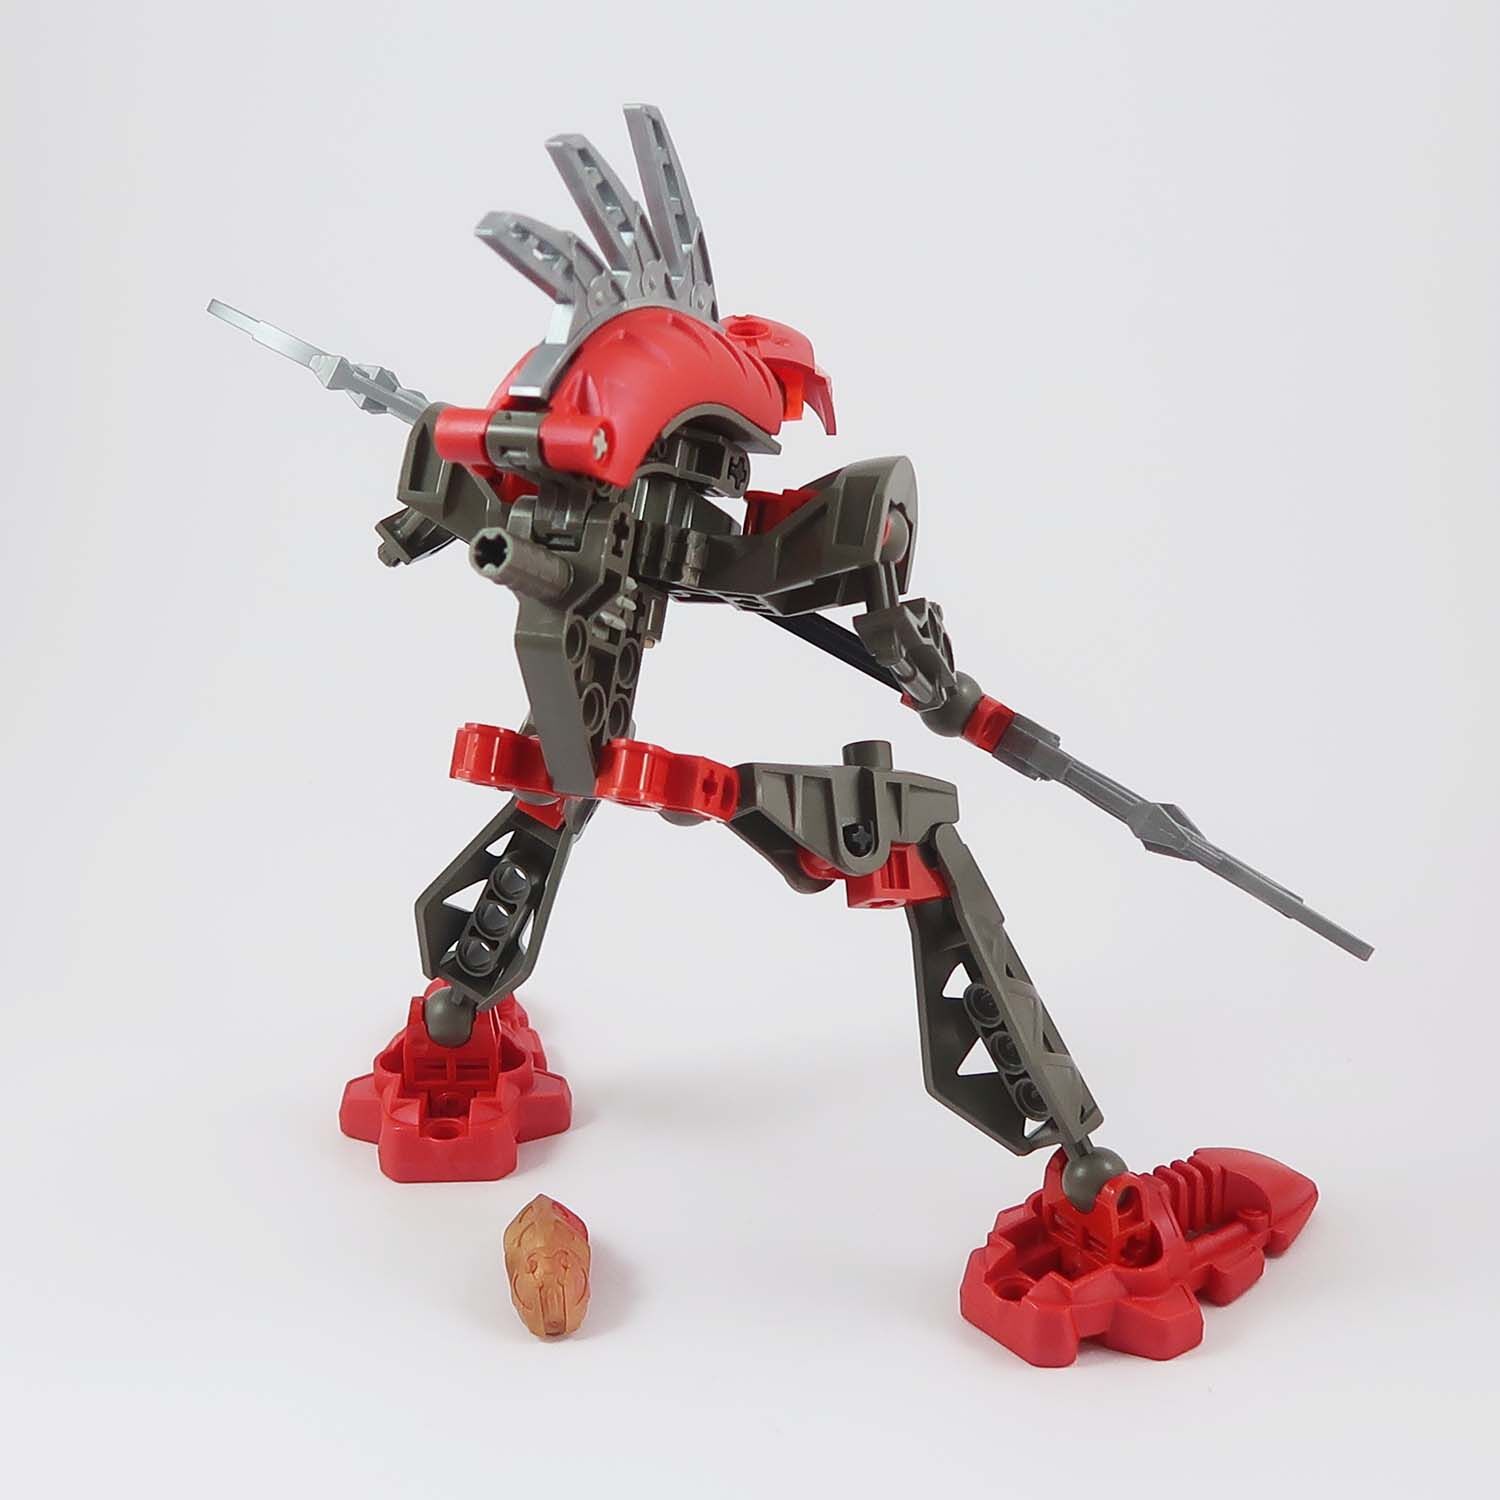 LEGO Bionicle - Rahkshi Turahk (8592)